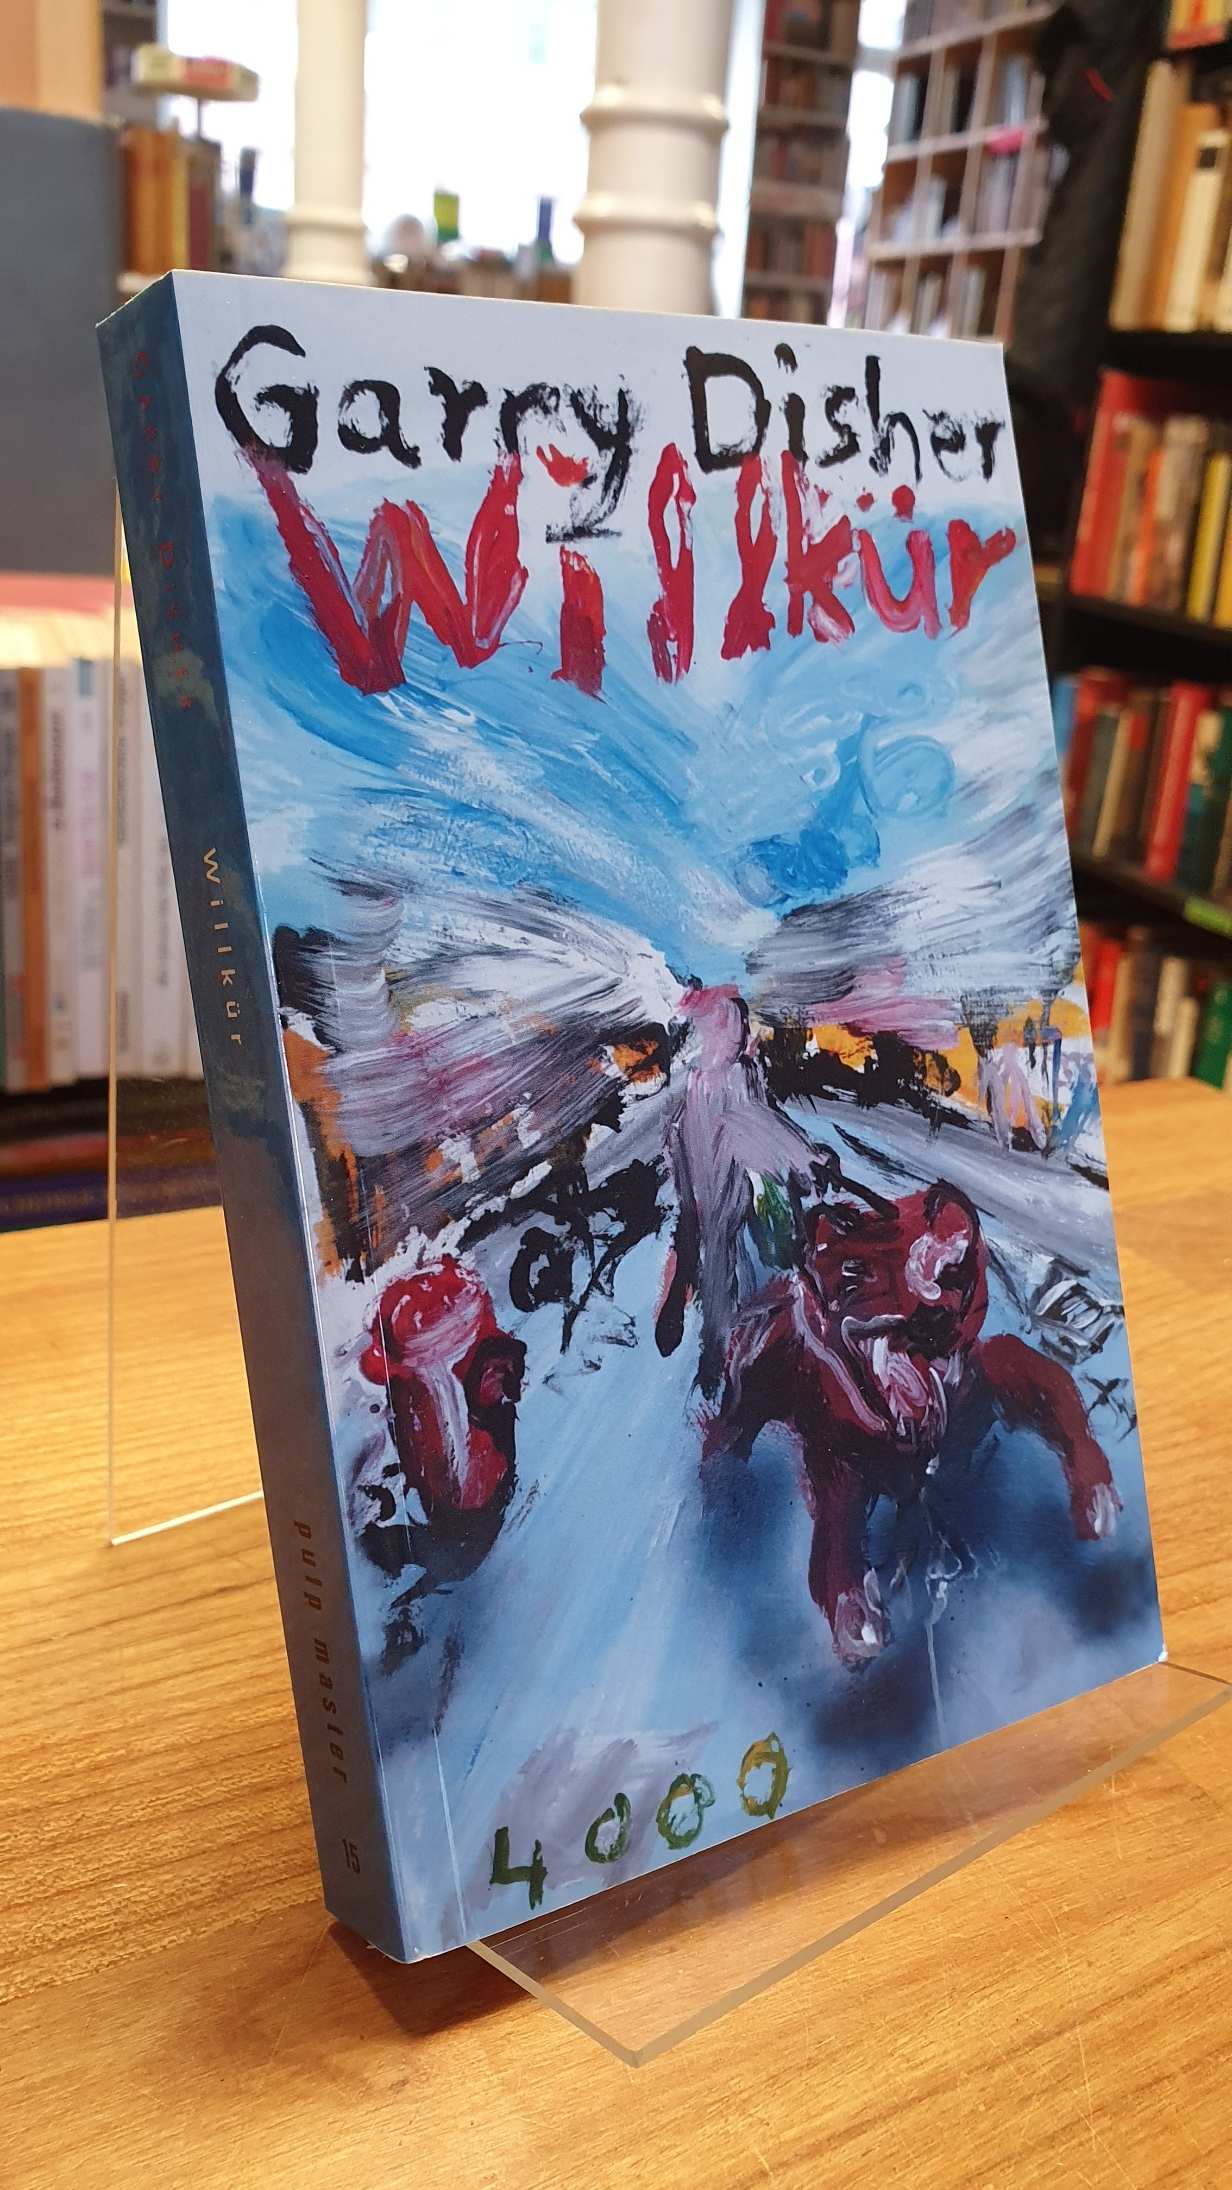 Disher, Willkür – ein Wyatt-Roman,